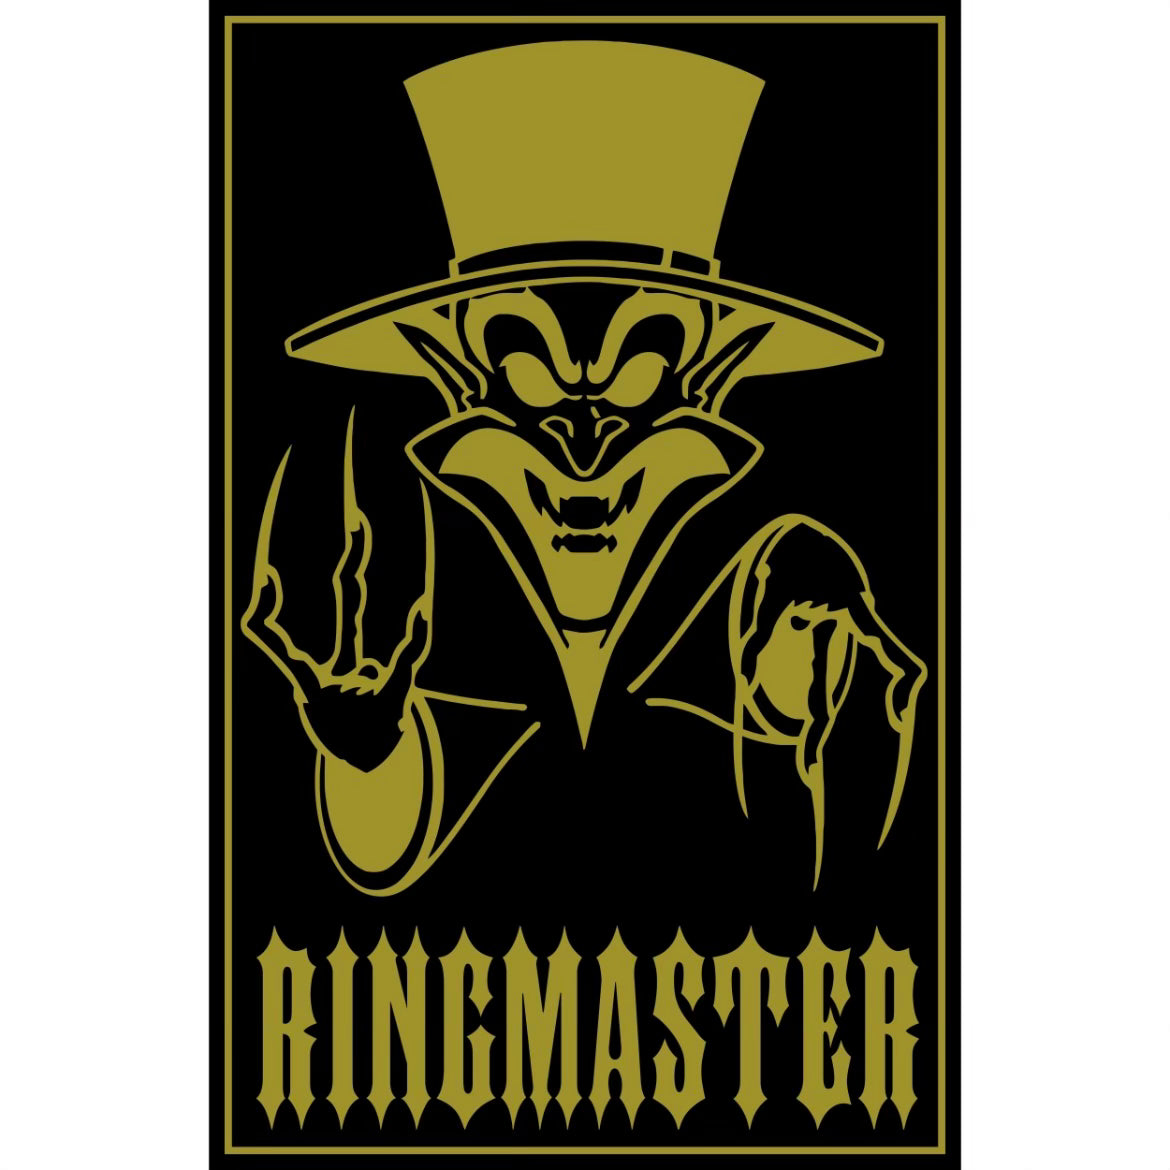 ringmaster icp poster